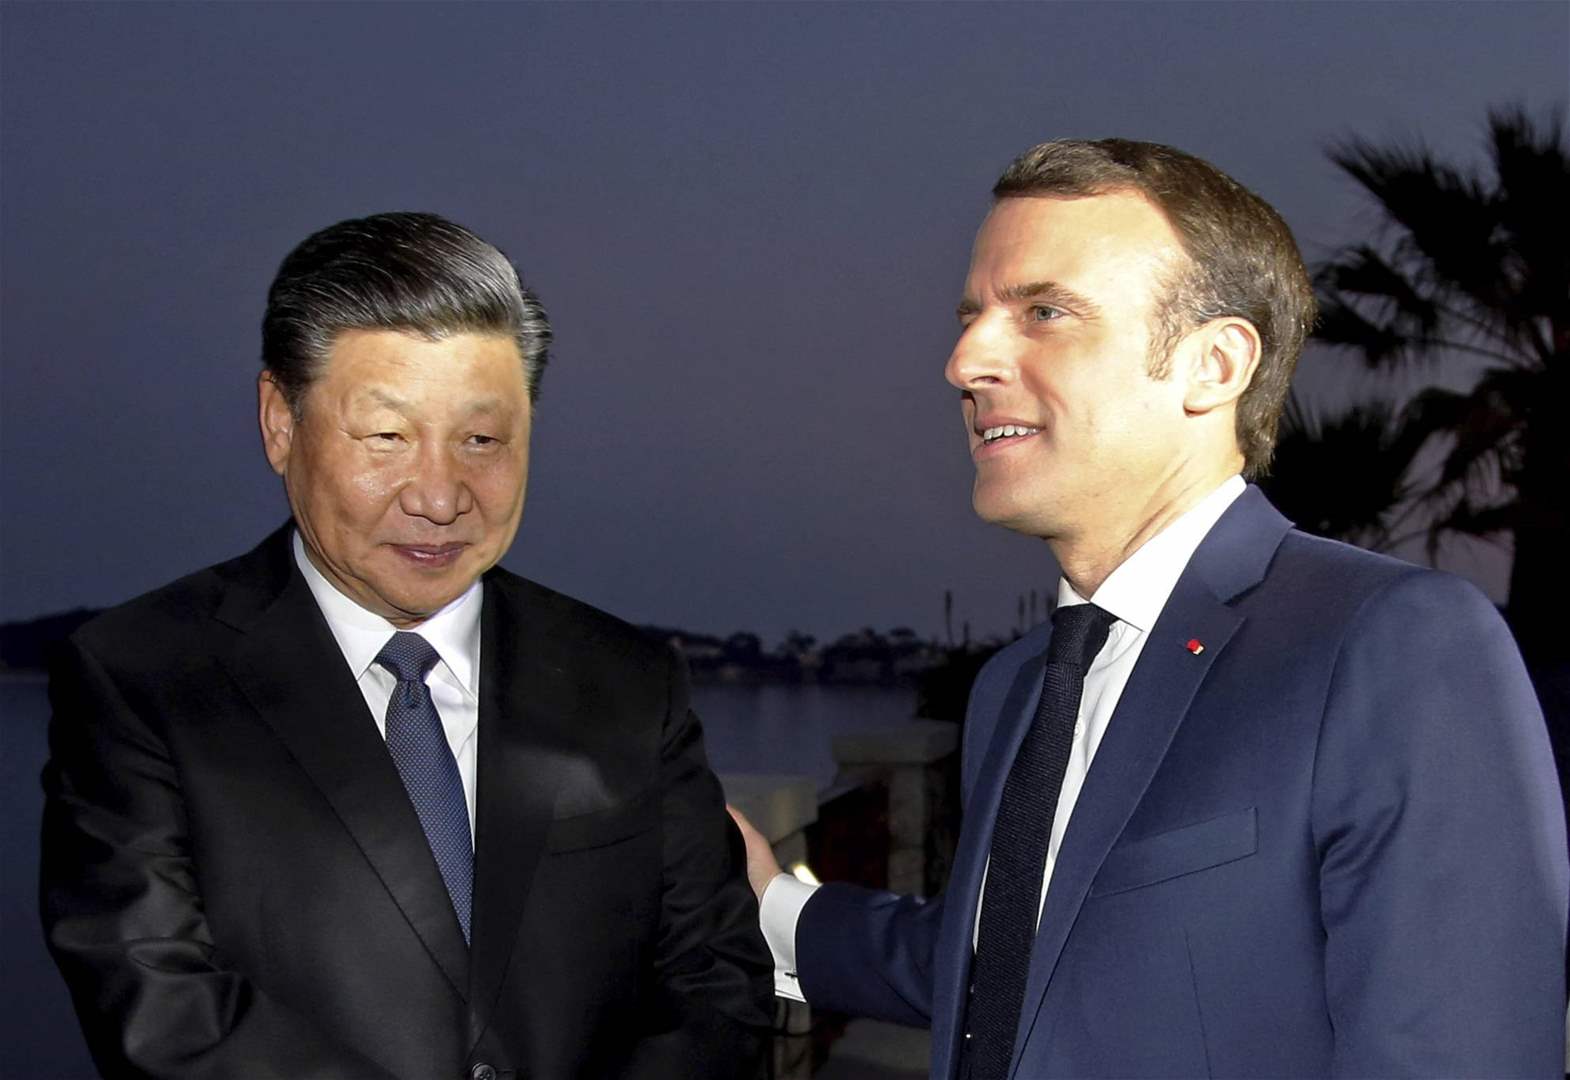 بالفيديو - الرئيس الصيني يصل إلى باريس للمرة الأولى منذ خمس سنوات 